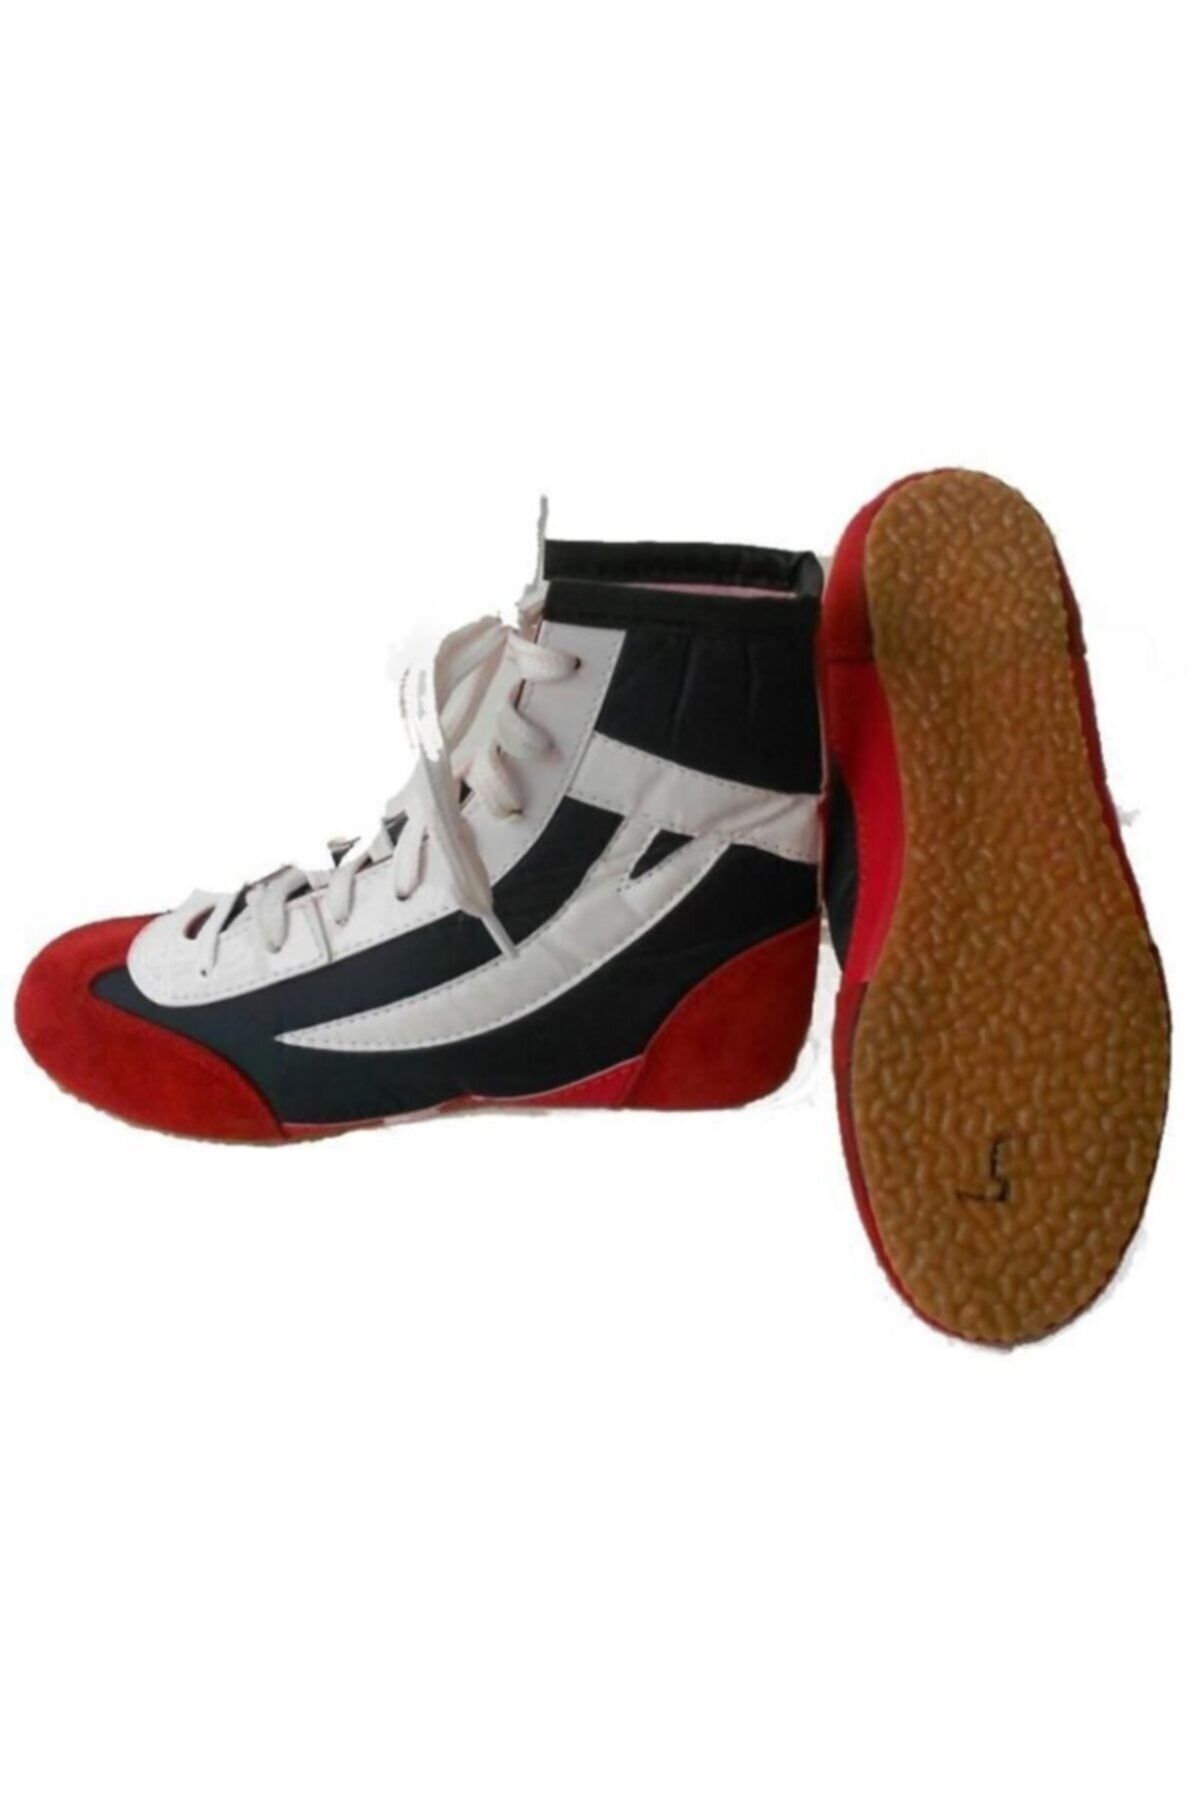 Leyaton Clifton Güreş Ayakkabısı Boks Ayakkabısı ( 34 Numara )